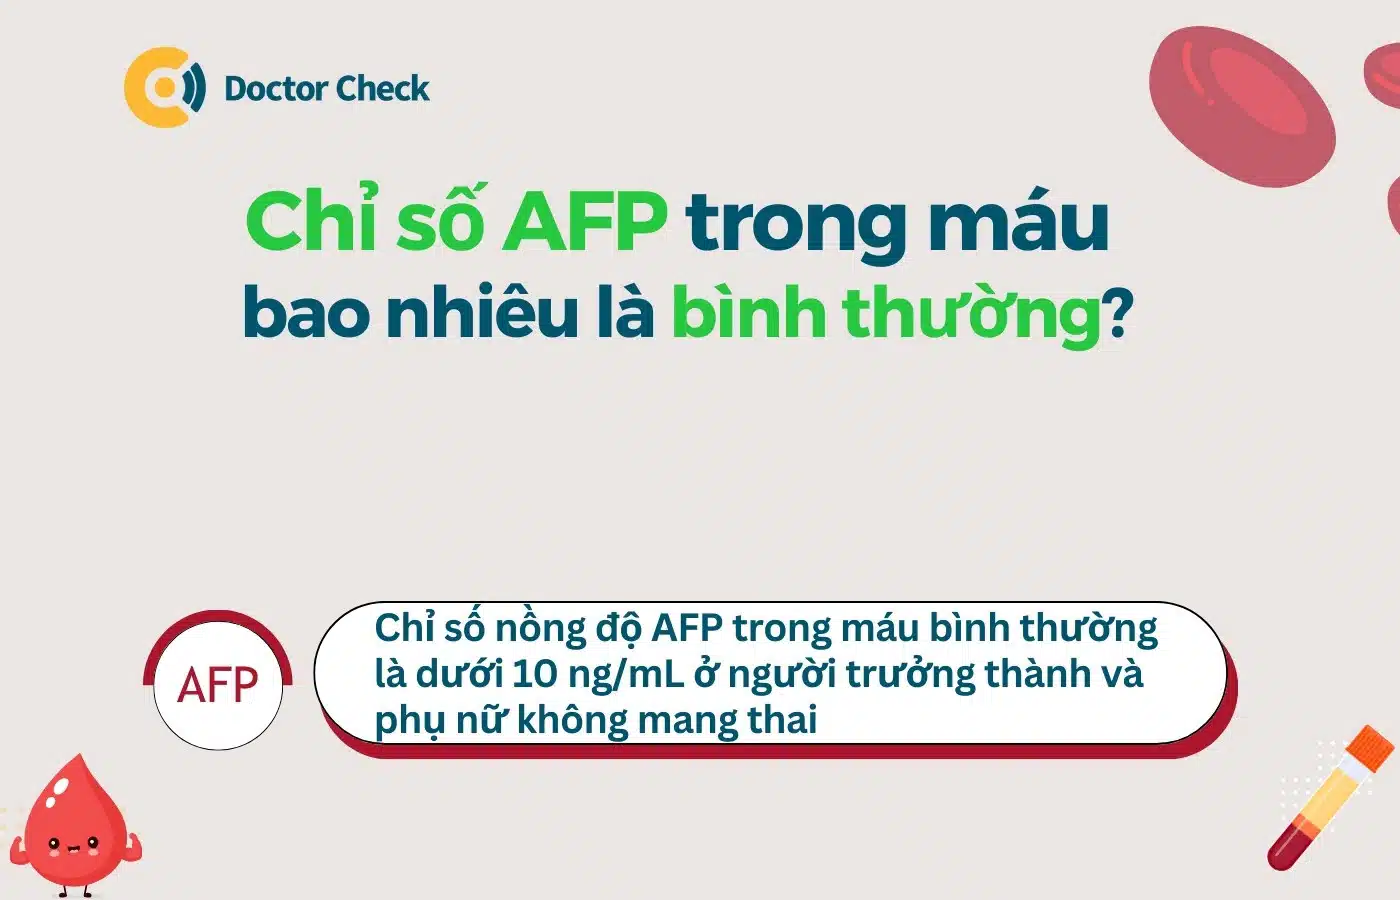 Chỉ số AFP trong máu bao nhiêu là bình thường?